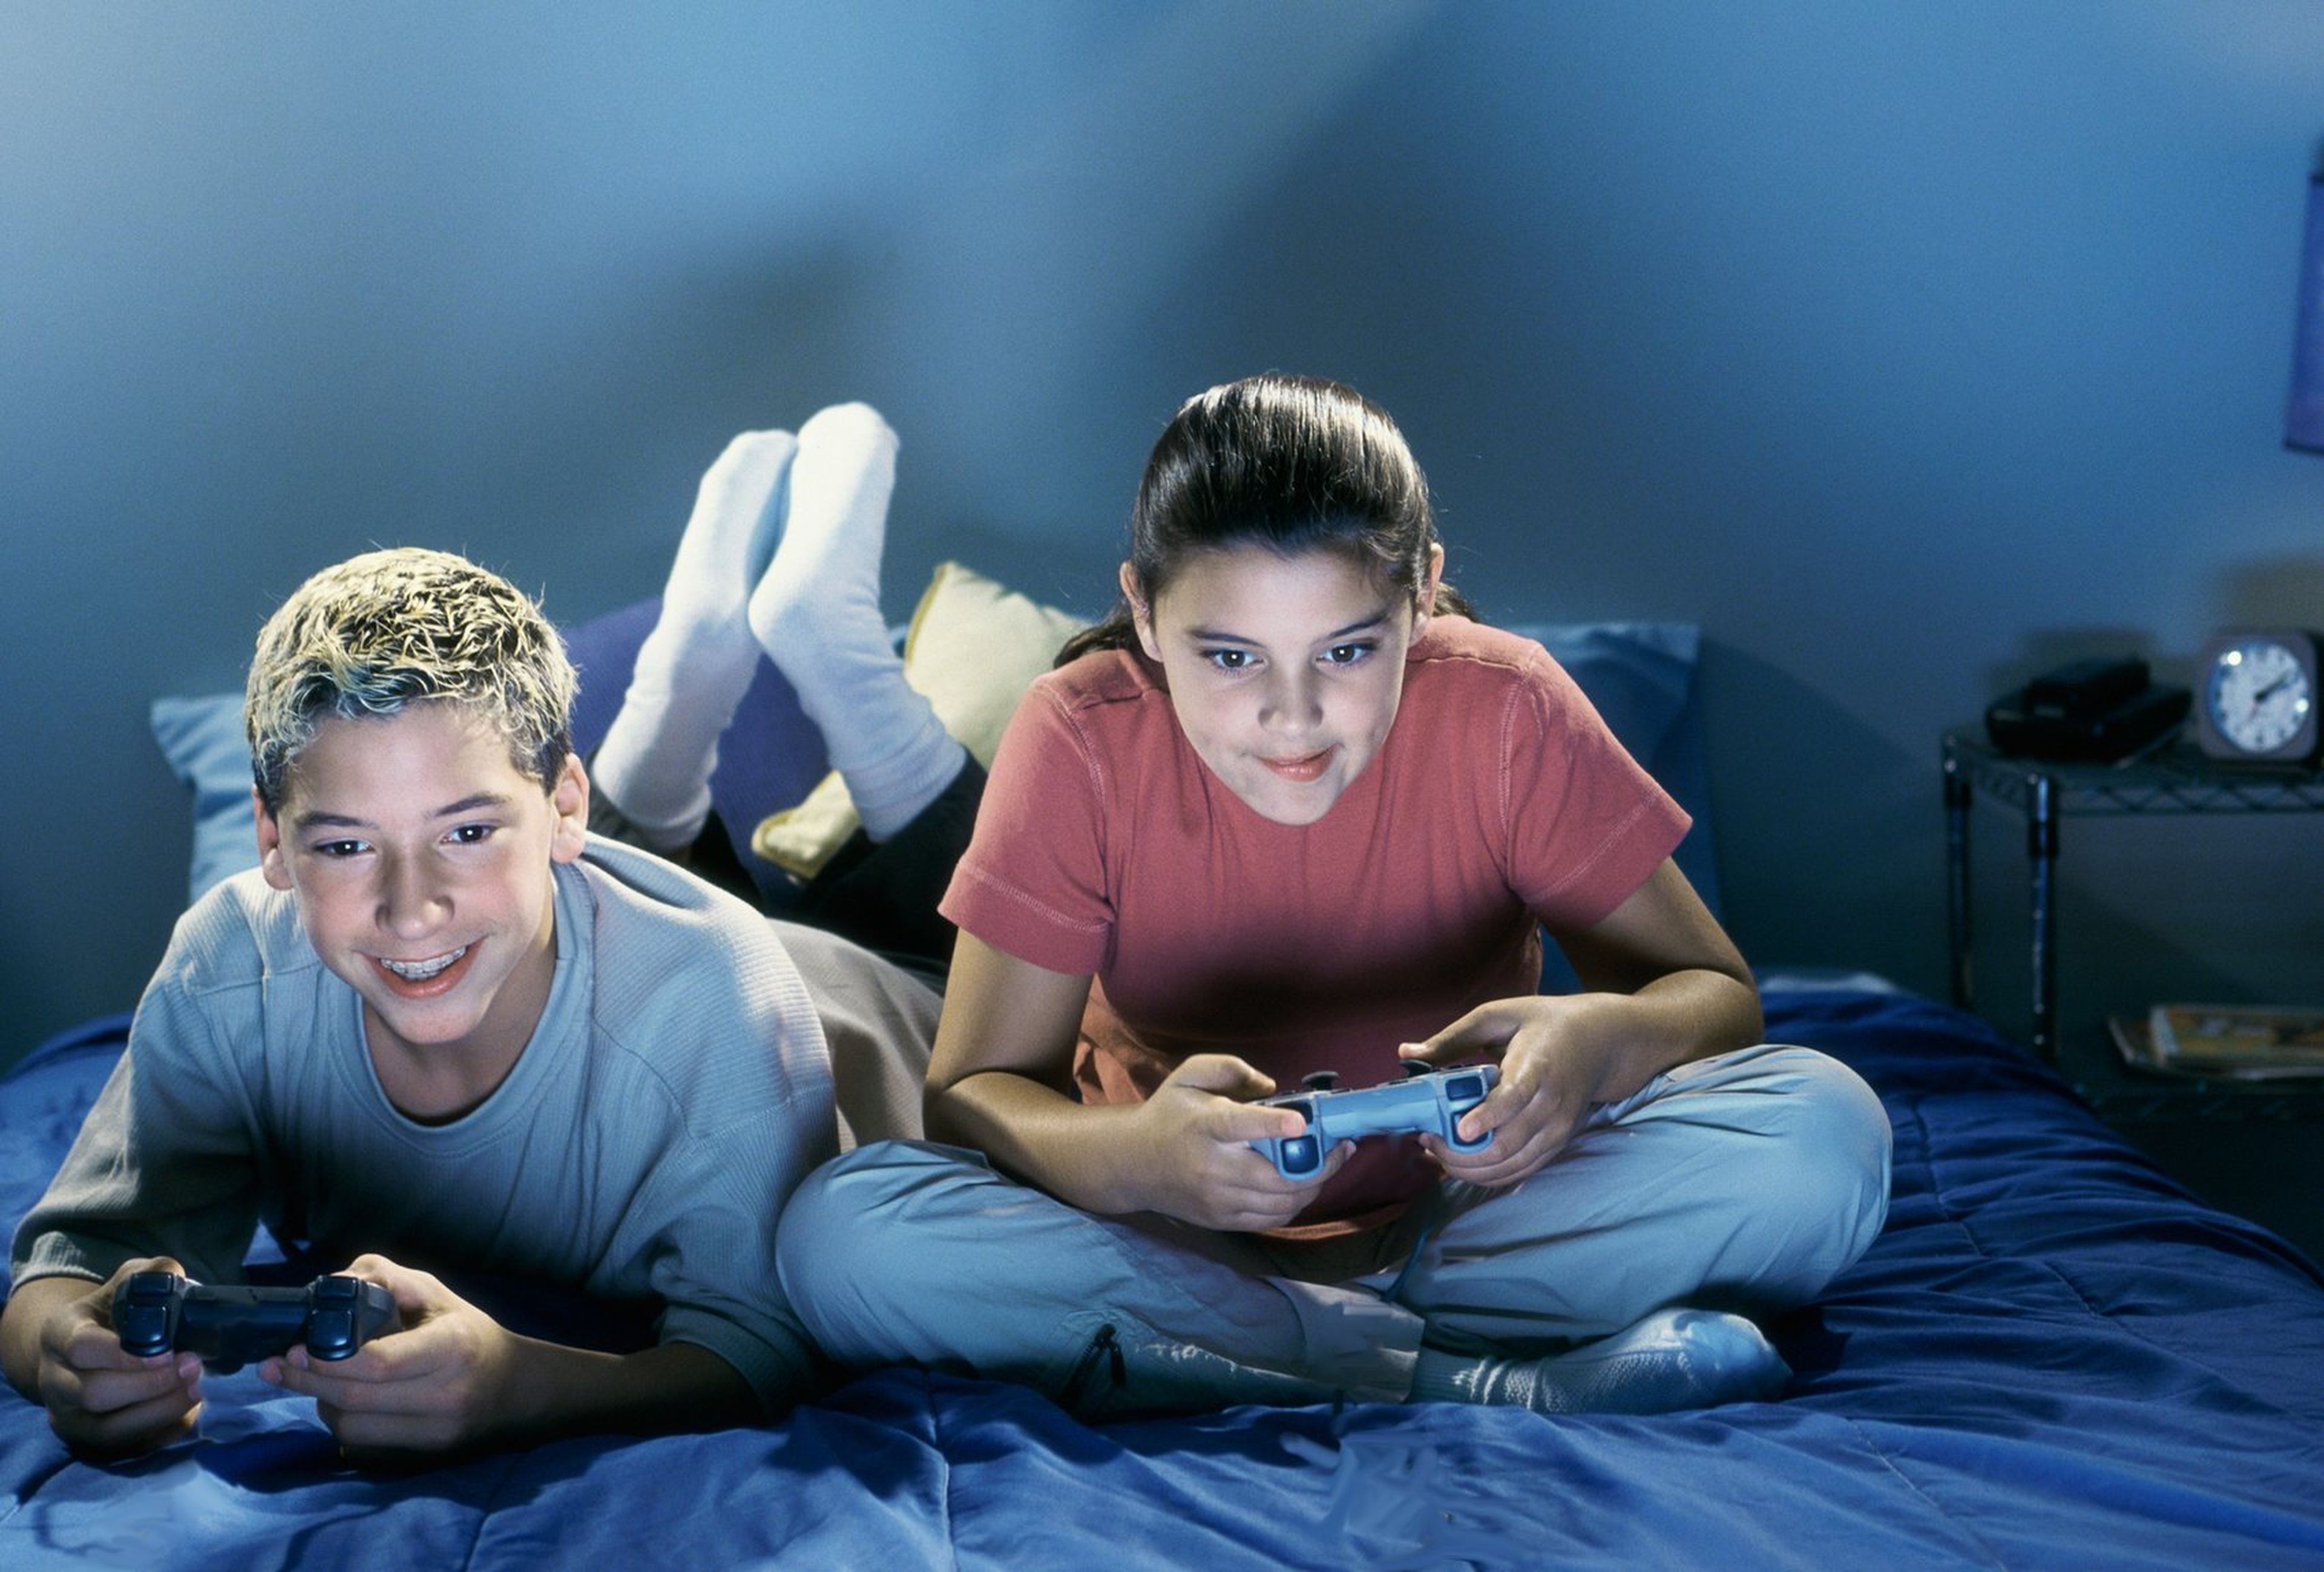 We like to play games. Подросток геймер. Игровая зависимость у подростков. Видеоигры для детей. Игровая зависимость картинки.